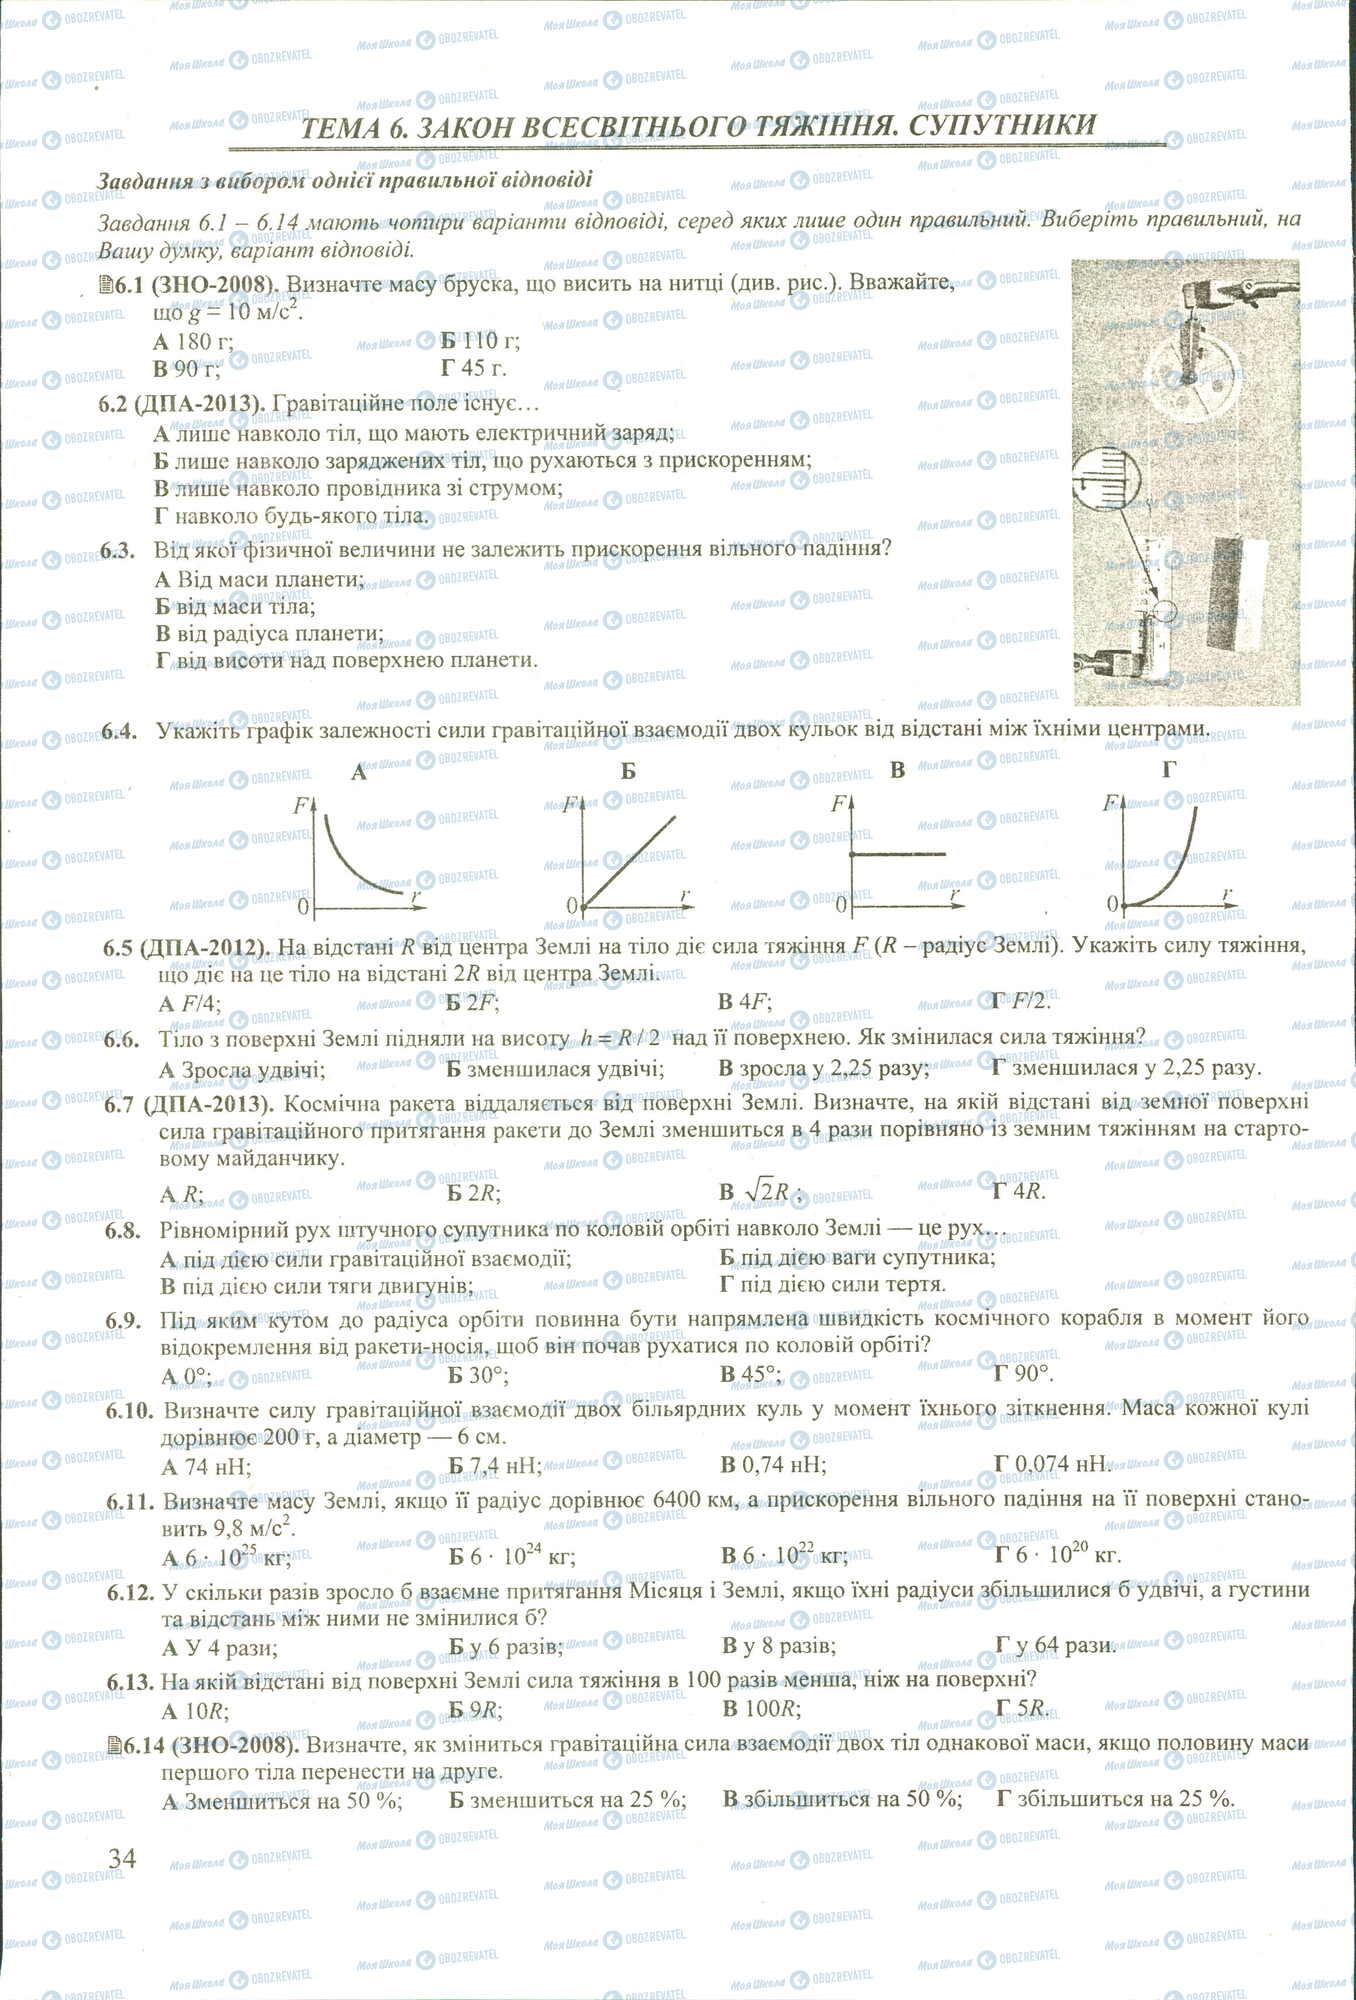 ЗНО Физика 11 класс страница 1-14